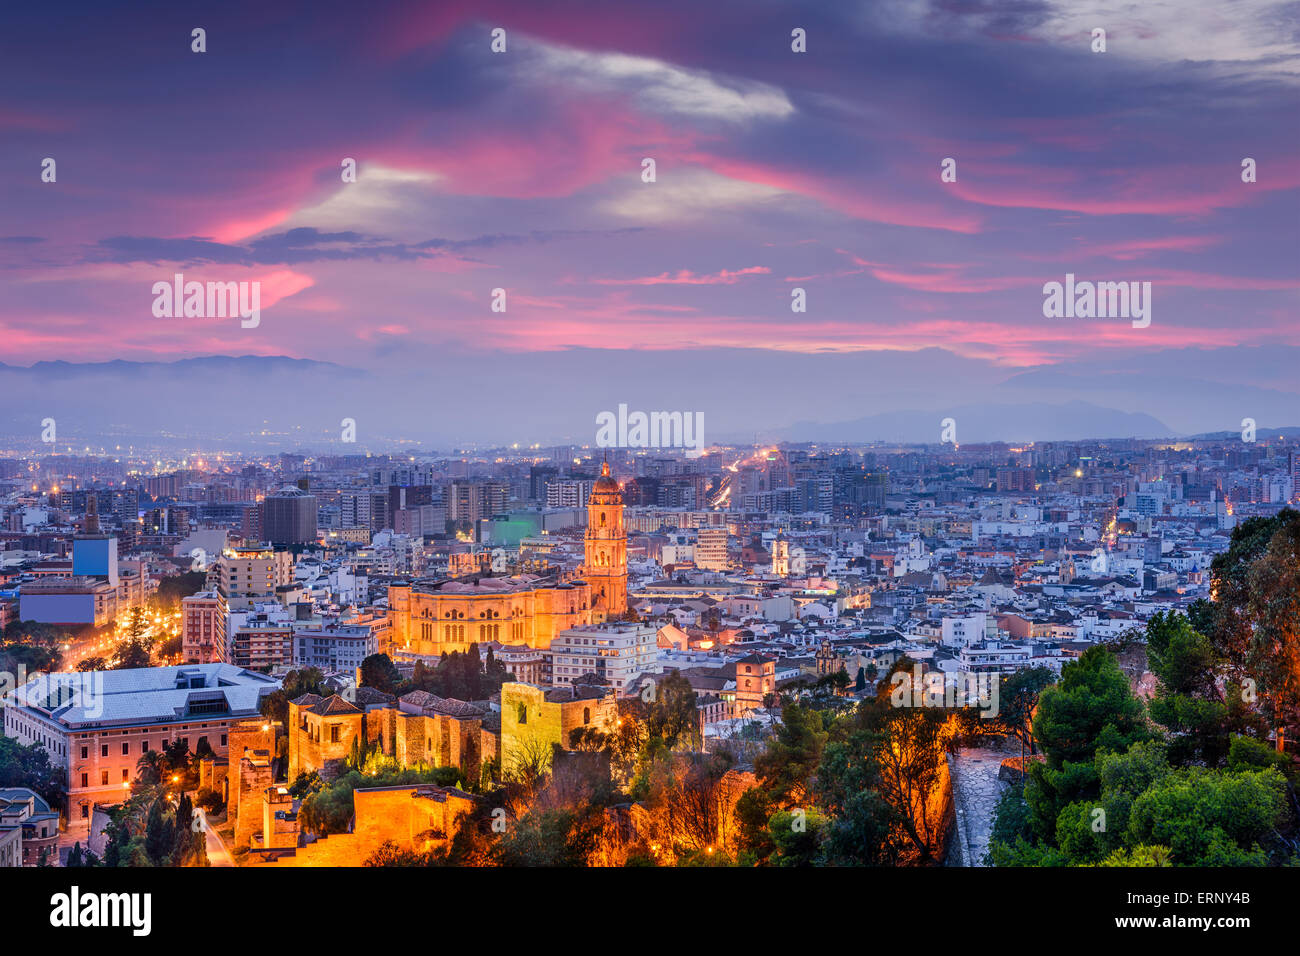 Malaga, Spanien Stadtbild an der Kathedrale, Rathaus und Alcazaba Zitadelle von Malaga. Stockfoto